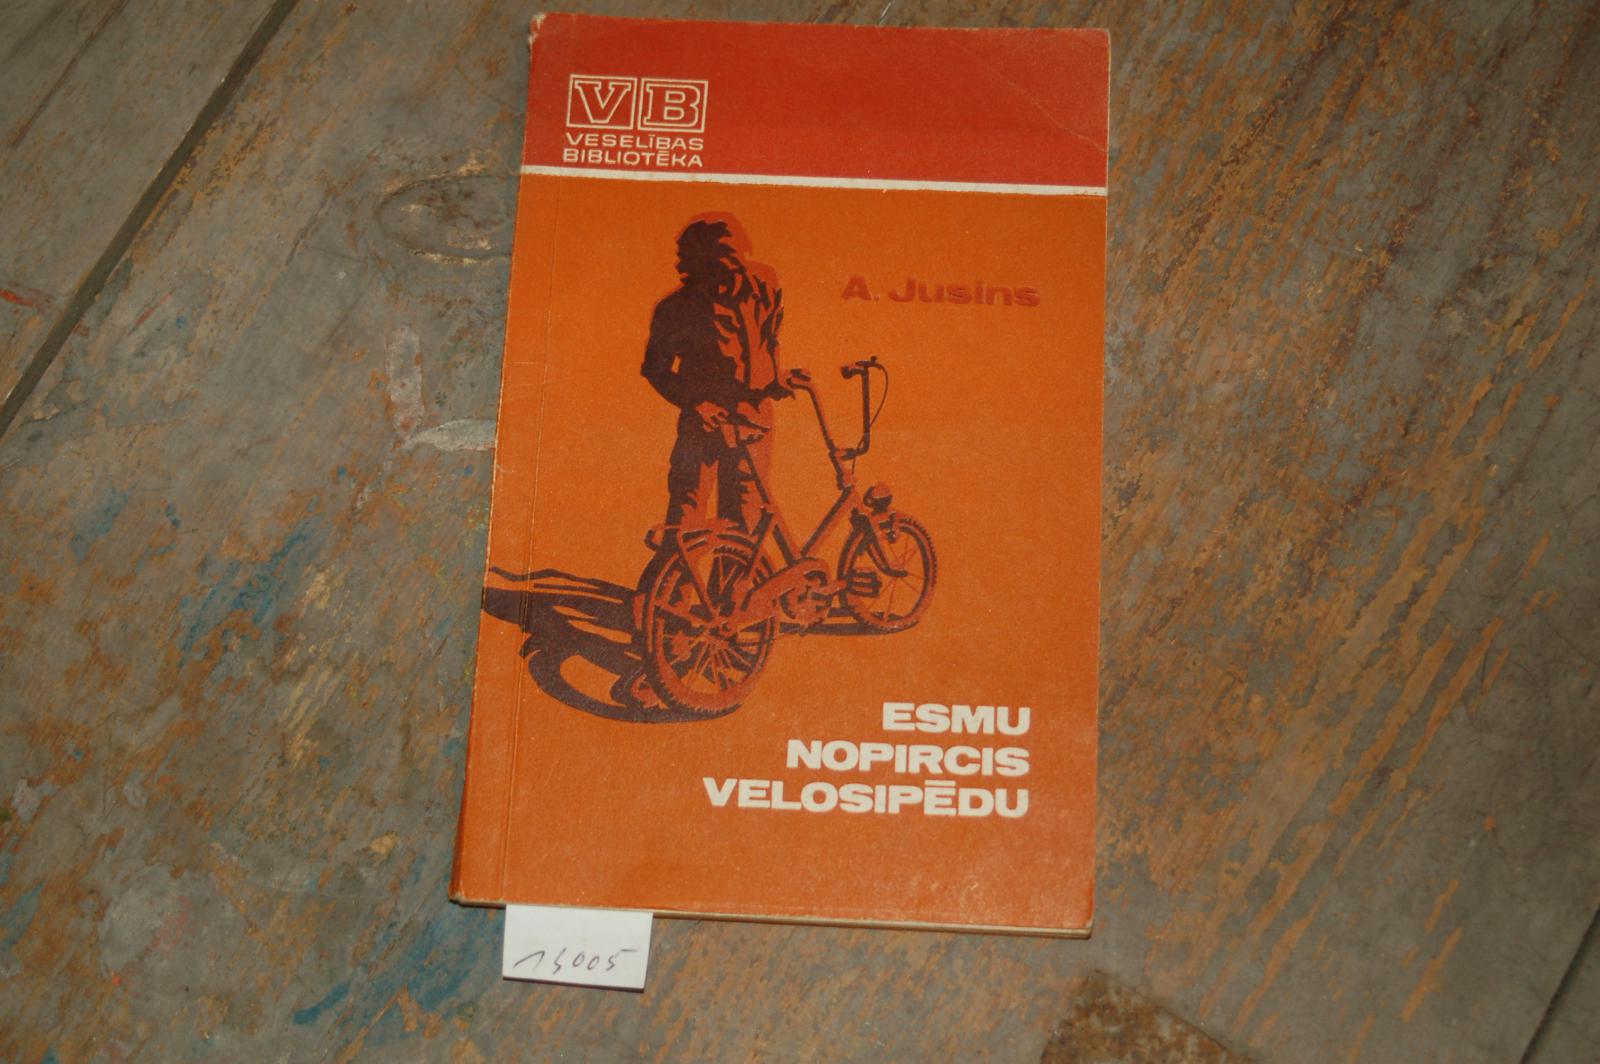 Jusins A.  Esmu nopircis velosipedu (Ich kaufe ein Fahrrad) 